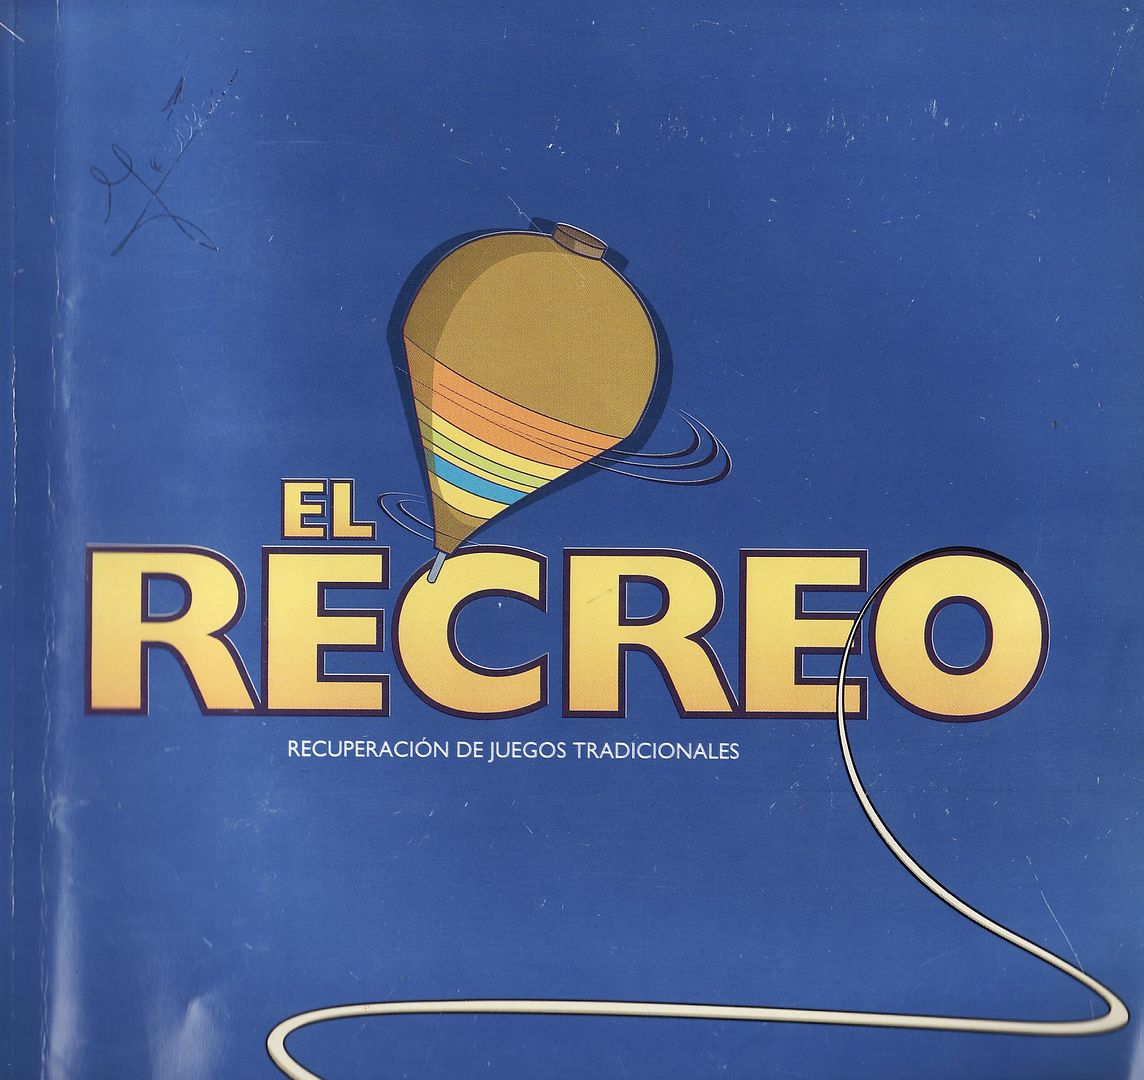 snucelo REC 0001 - El Recreo (Recuperacion Juegos Tradicionales)